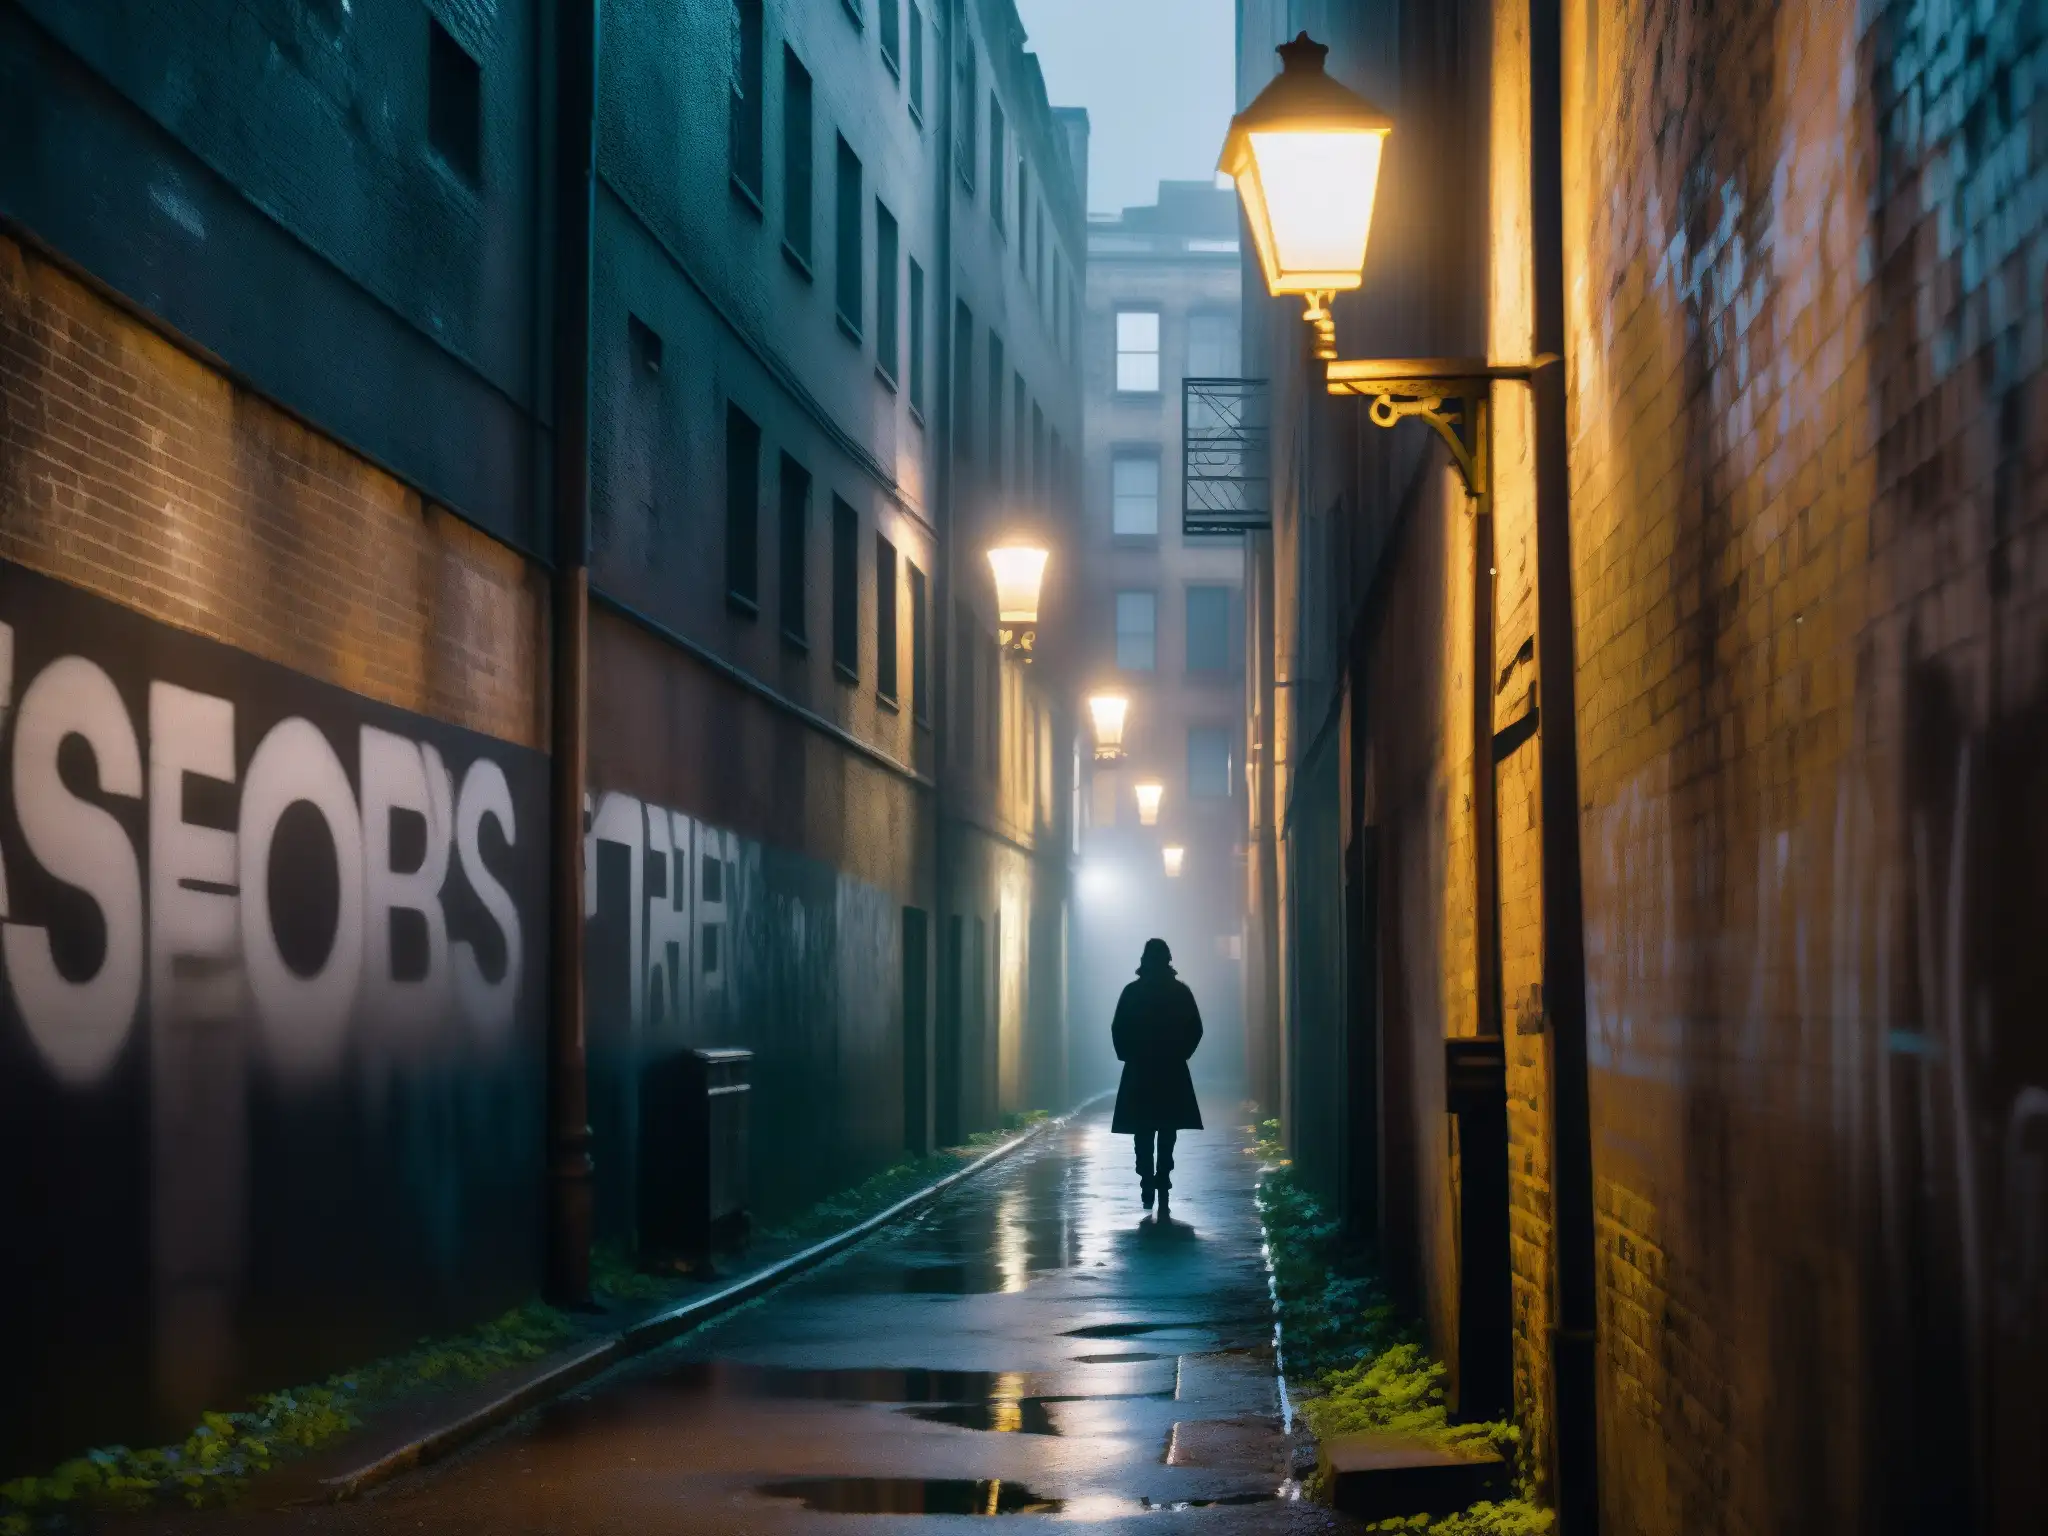 Un callejón urbano oscuro y misterioso con grafitis, luces titilantes y una figura solitaria, evocando mitos y leyendas urbanas psique